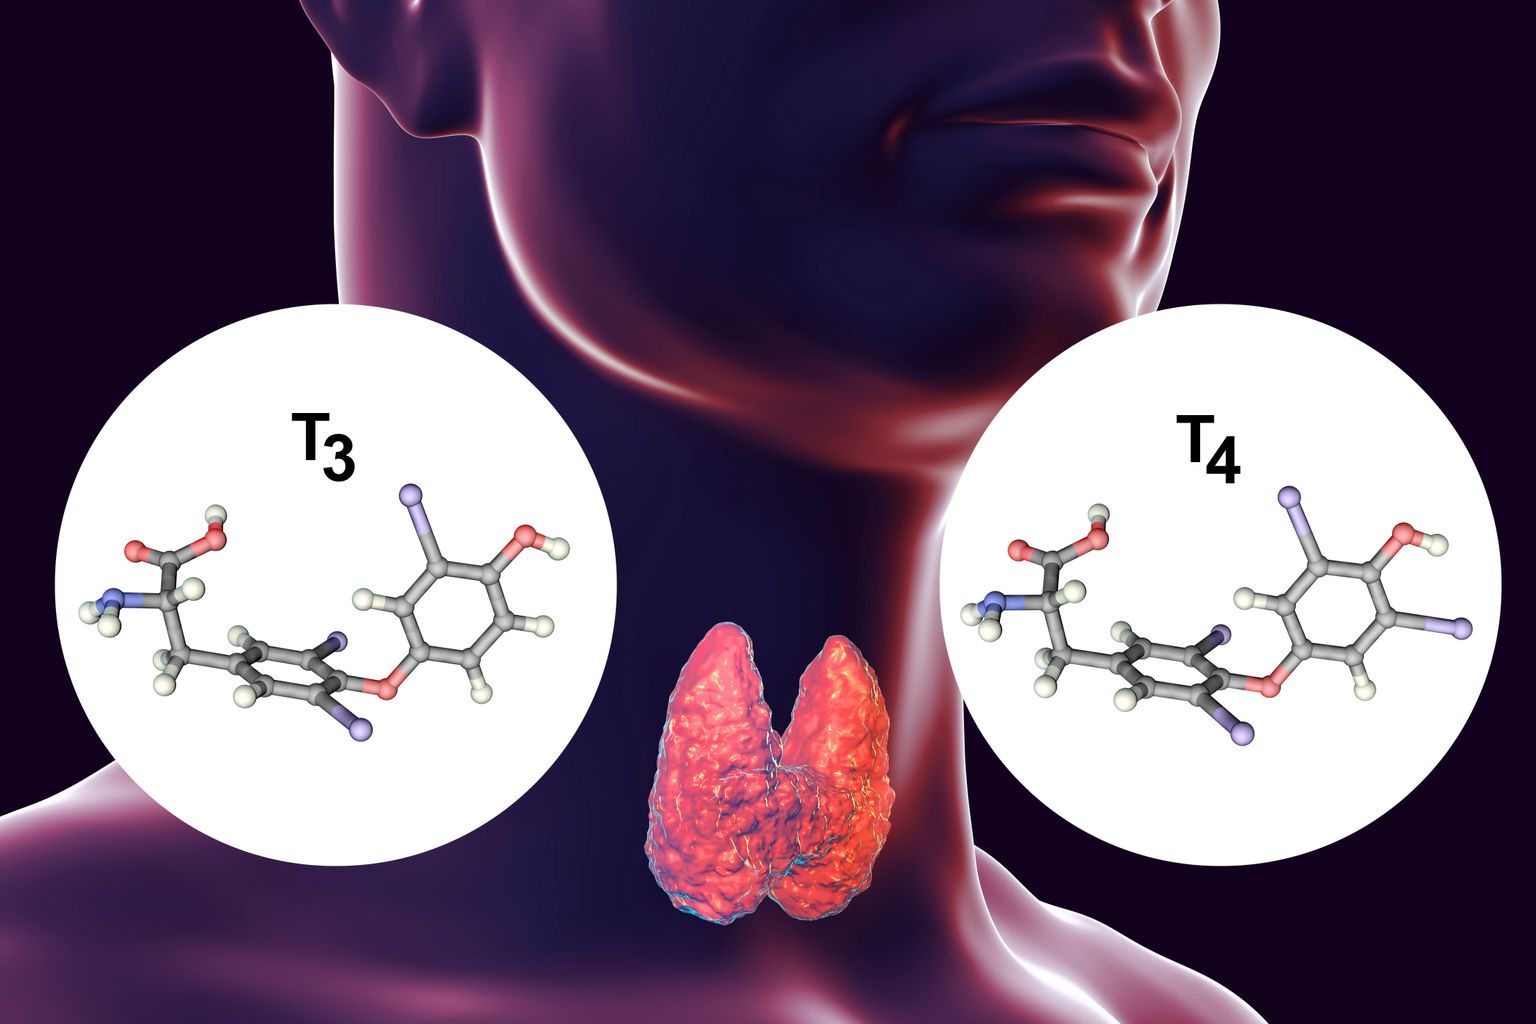 Grafik der Schilddrüse und den Hormonen T3 und T4